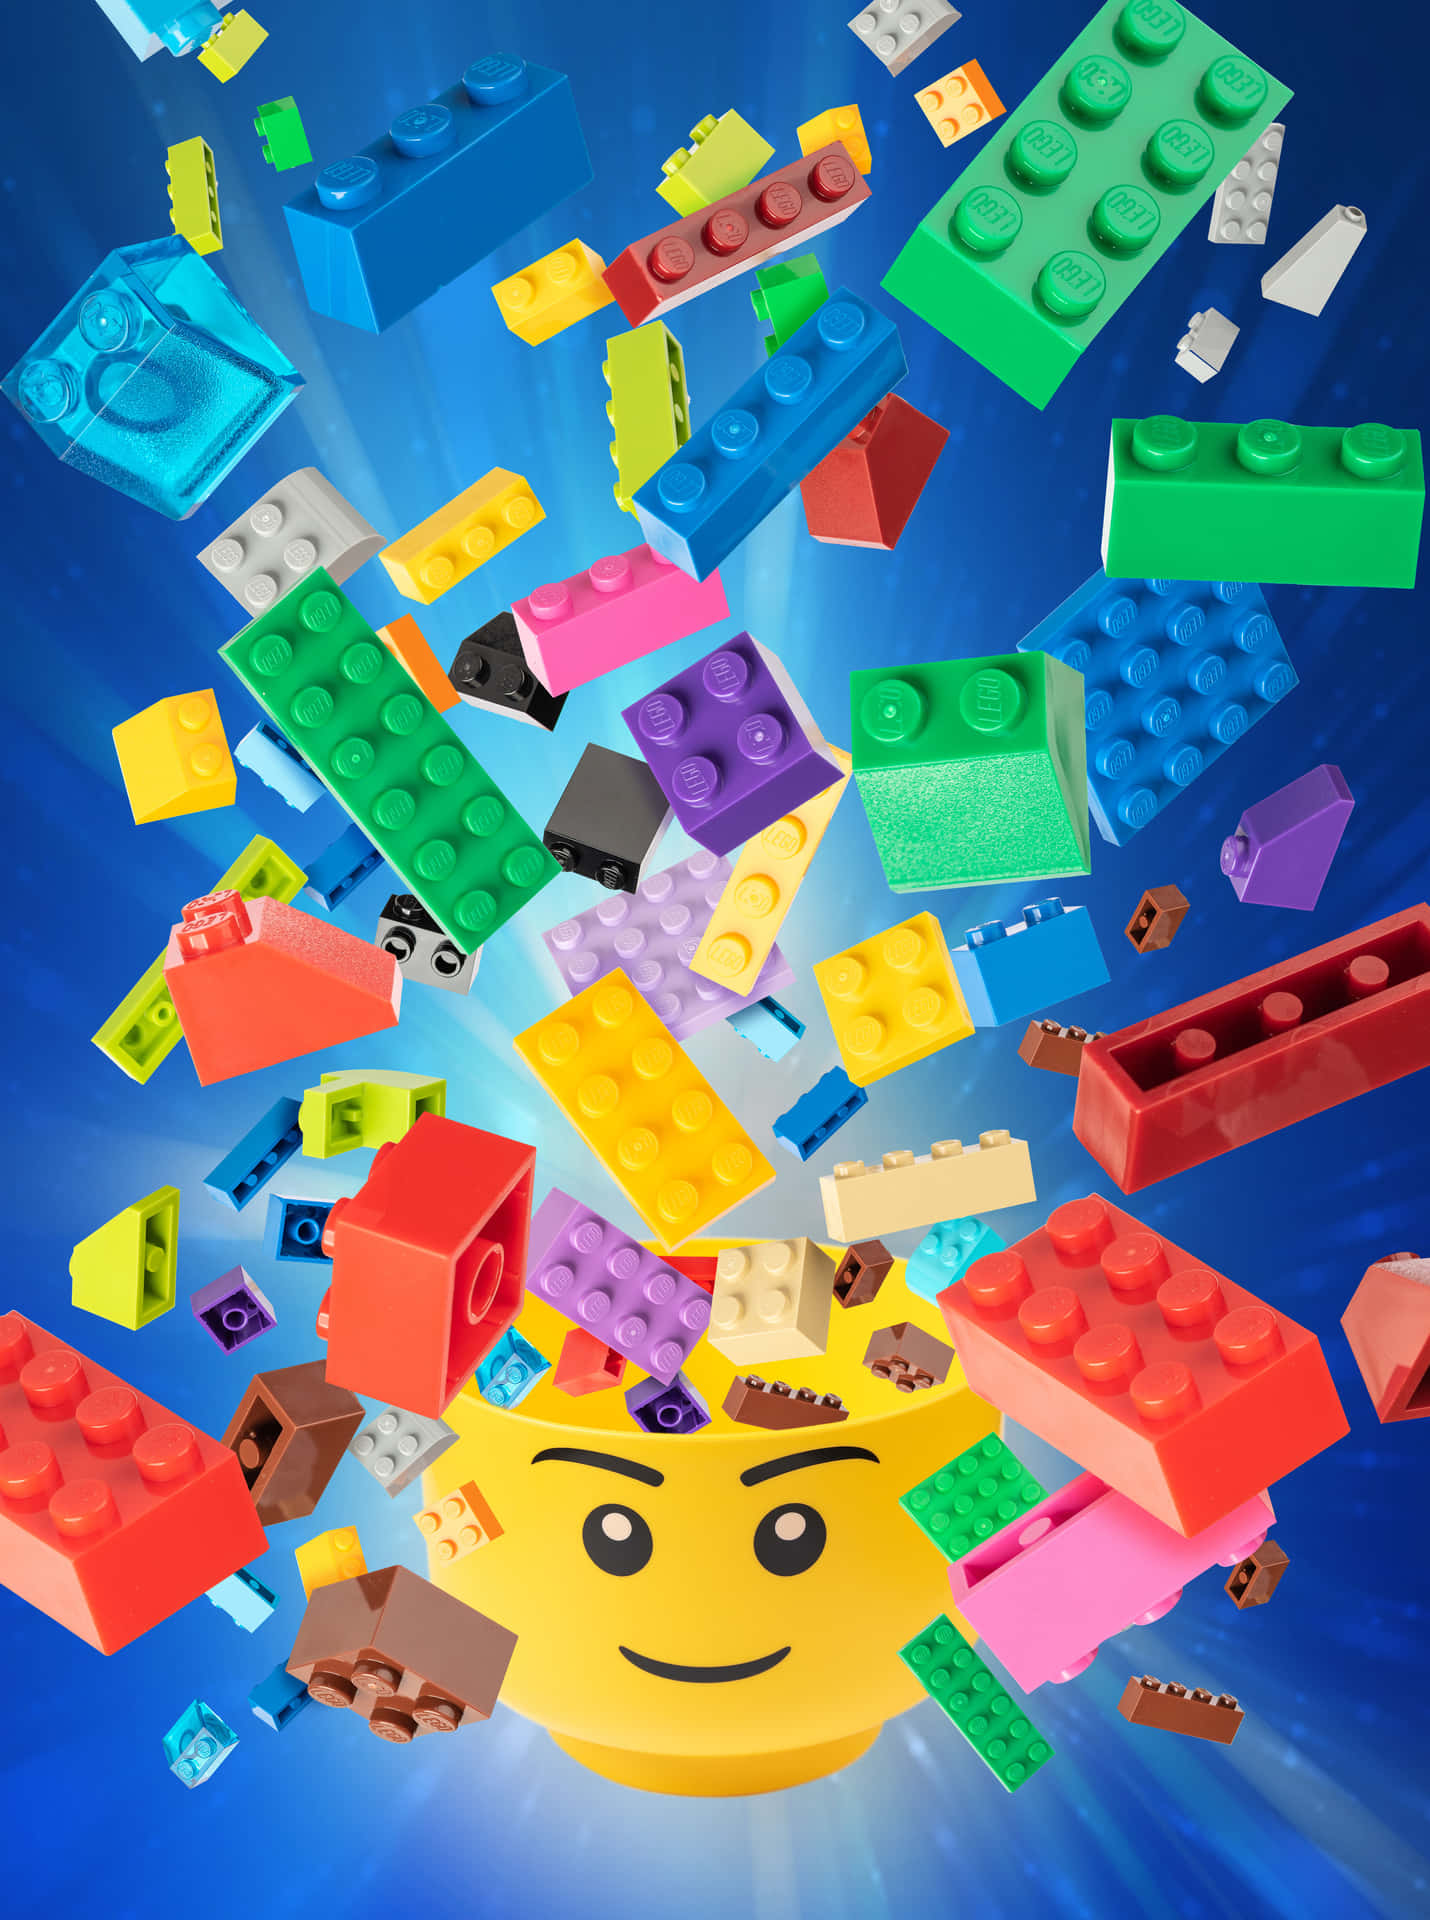 Legosteine - Ein Lego-spiel Mit Einem Bunten Gesicht